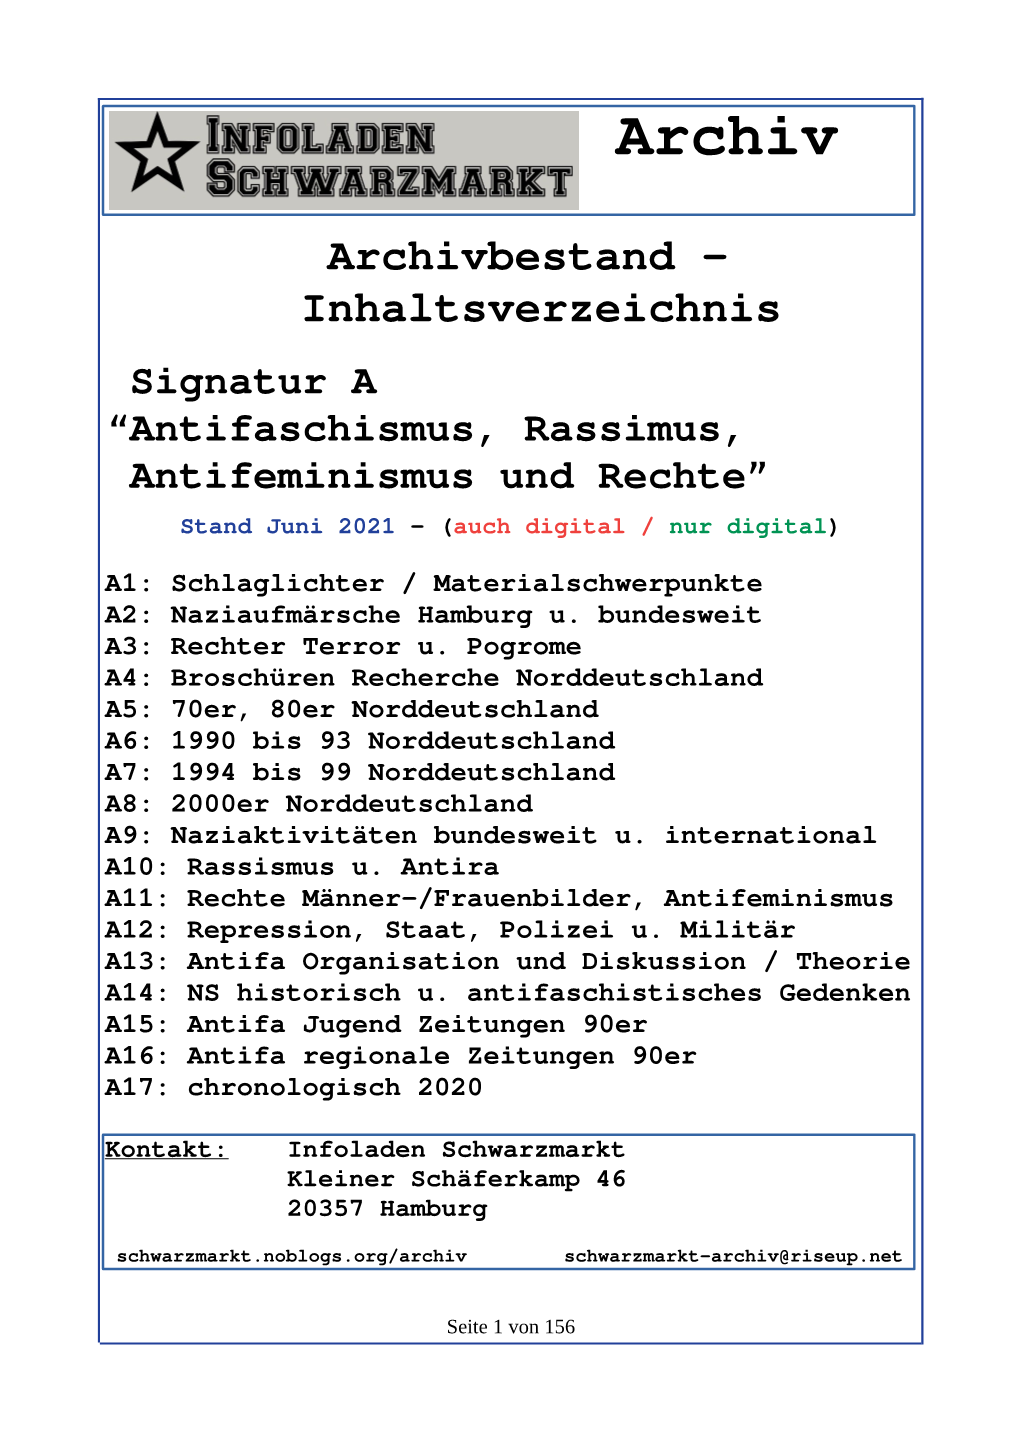 Infoladen Schwarzmarkt Archiv Gesamtverzeichnis A